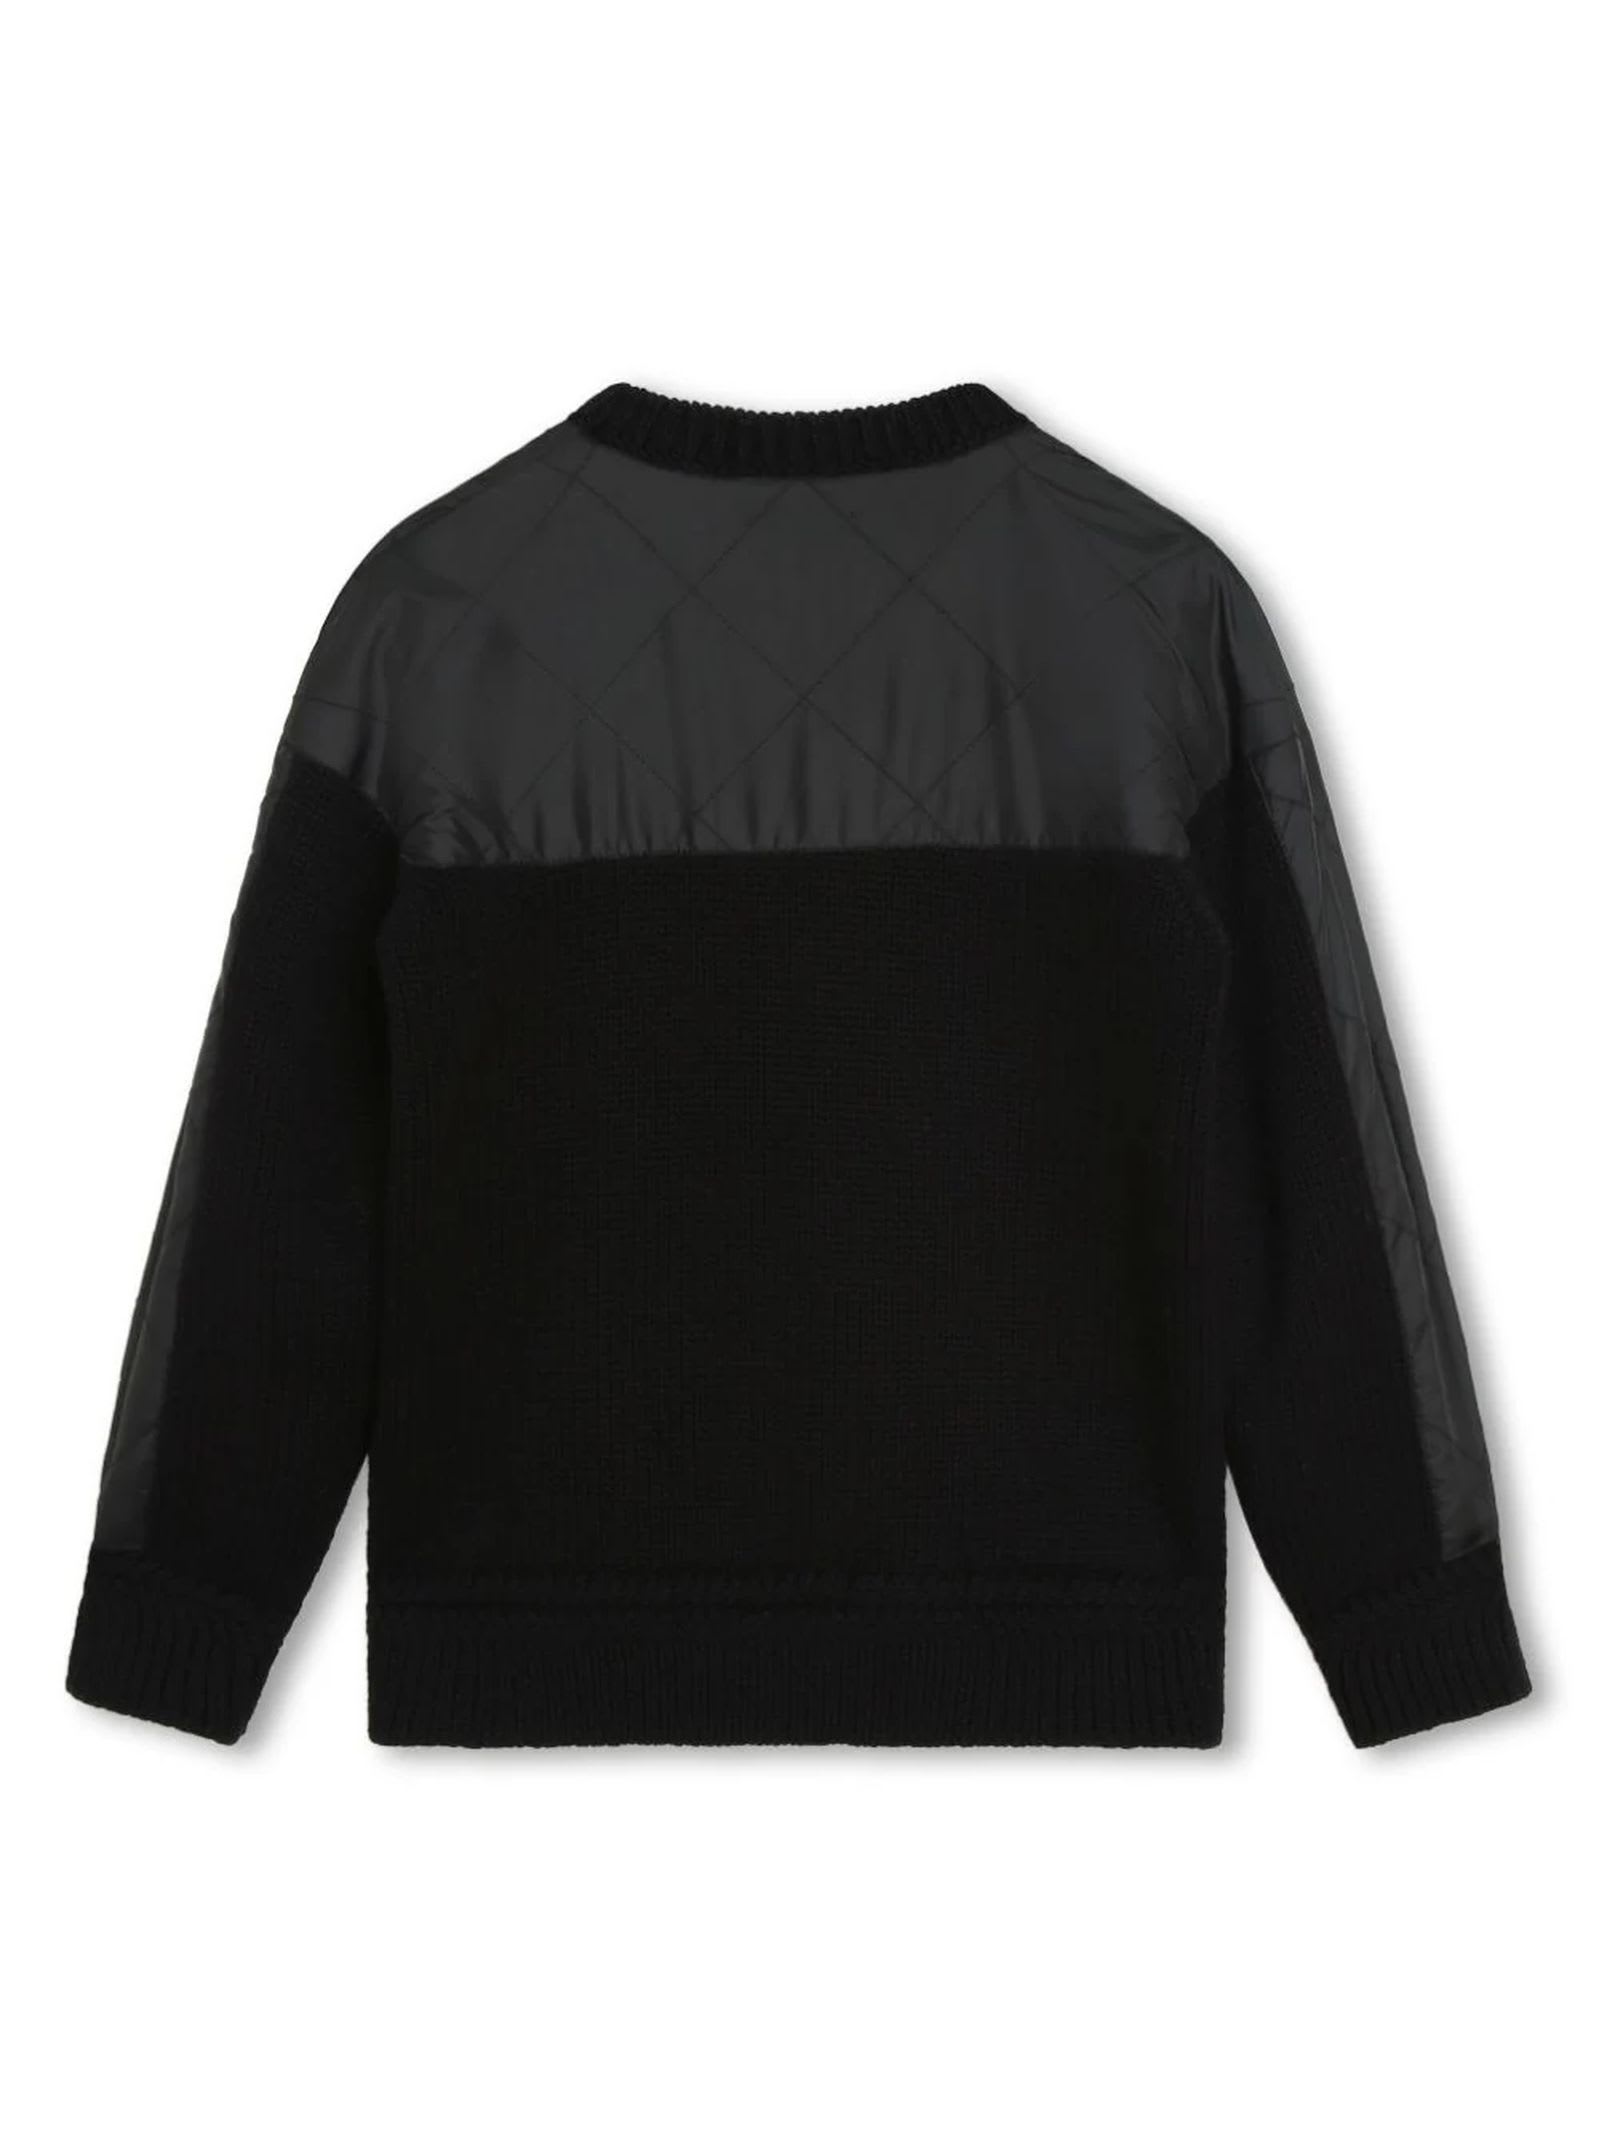 Shop Lanvin Black Cotton Pullover In B Nero